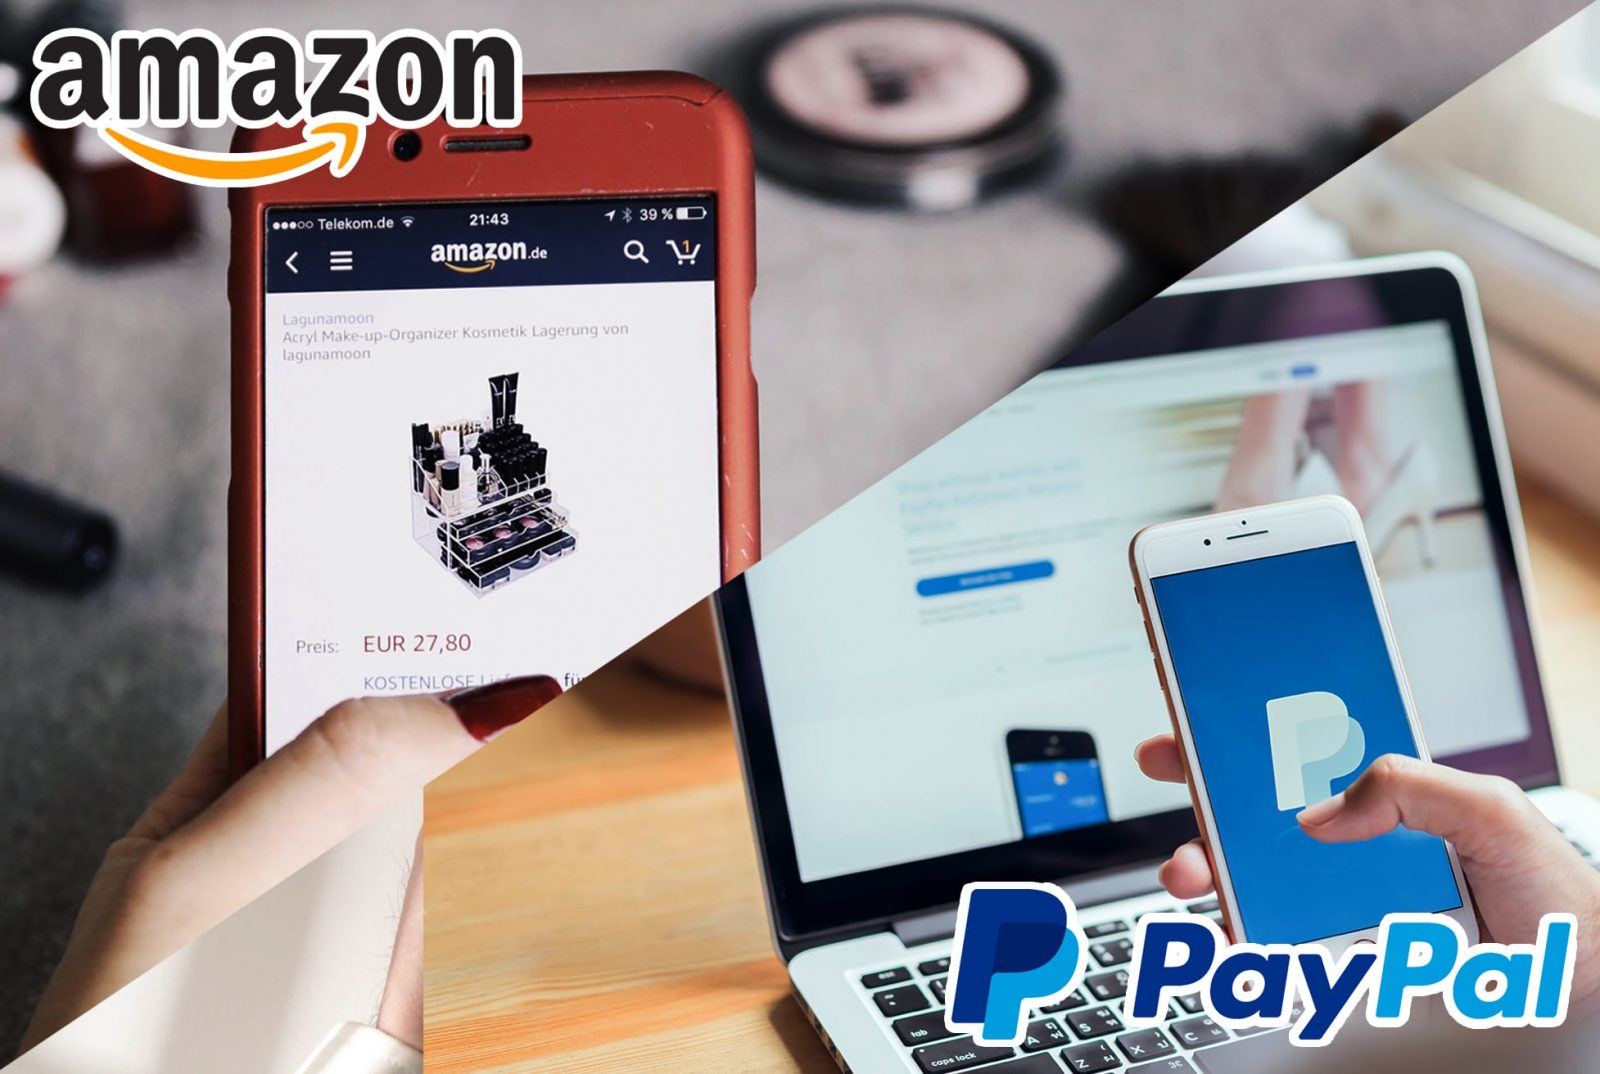 طريقة استخدام باي بال على أمازون PayPal لإتمام معاملات التسوق بنجاح